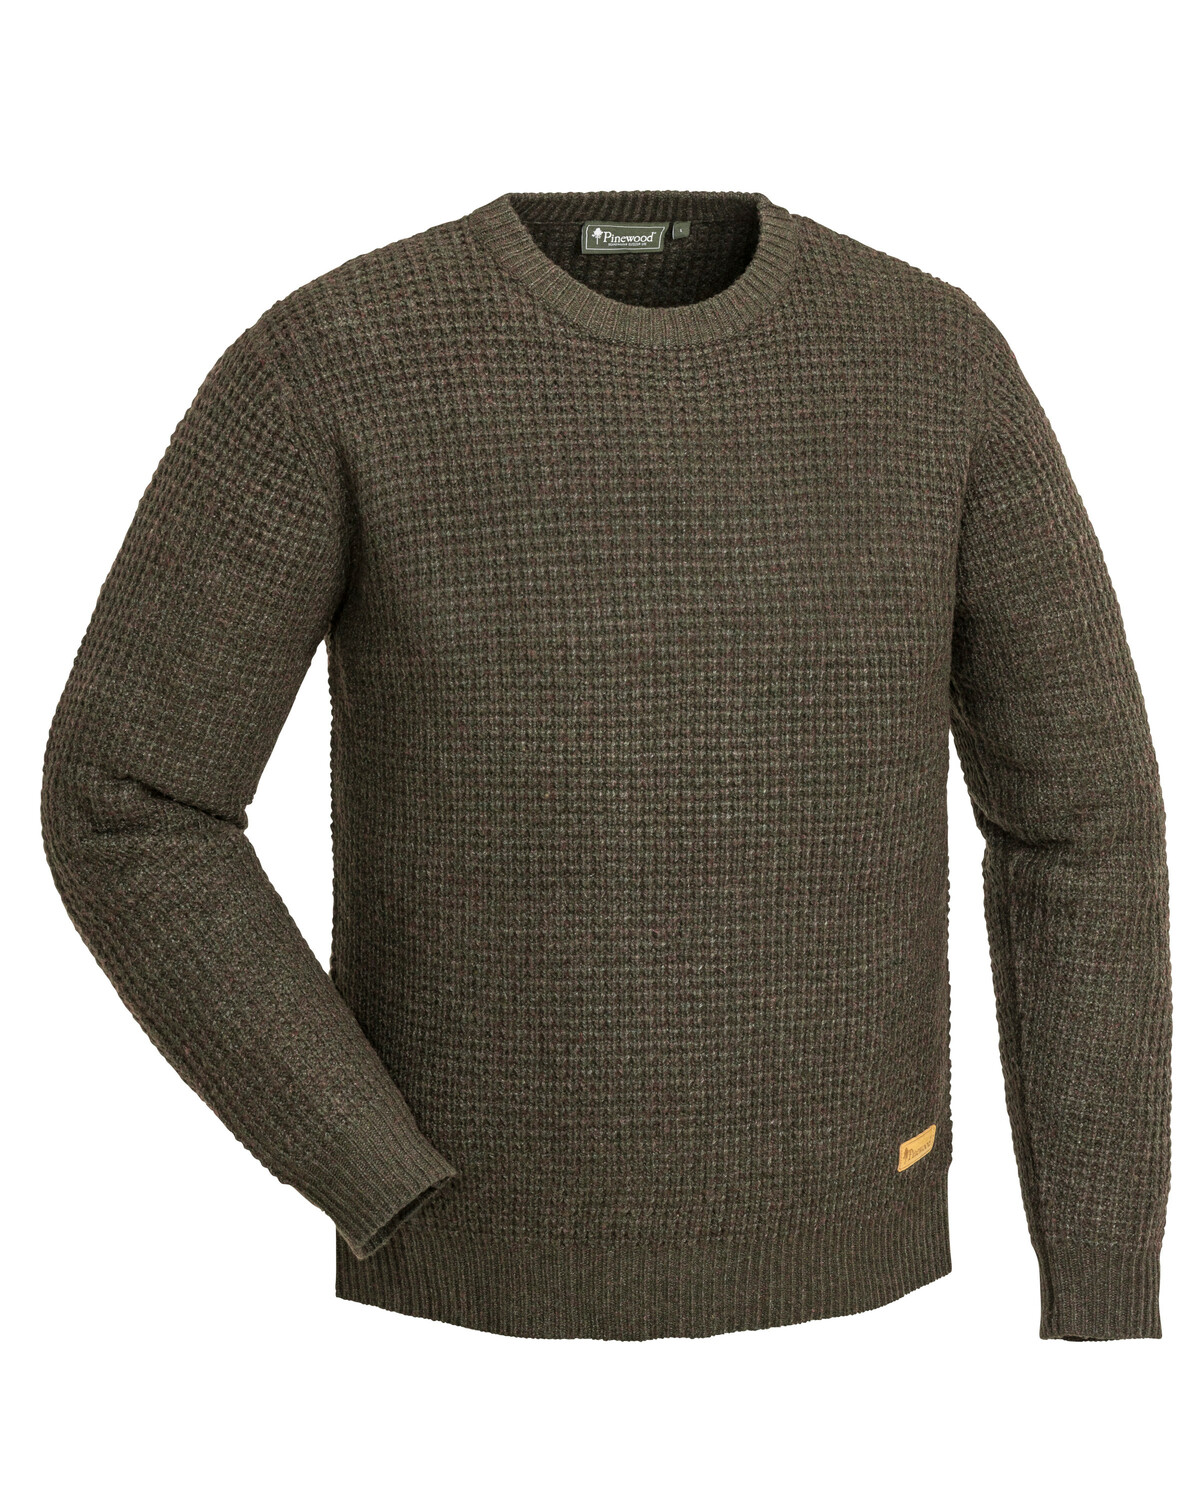  Полушерстяной свитер RALF Pinewood 5548-207